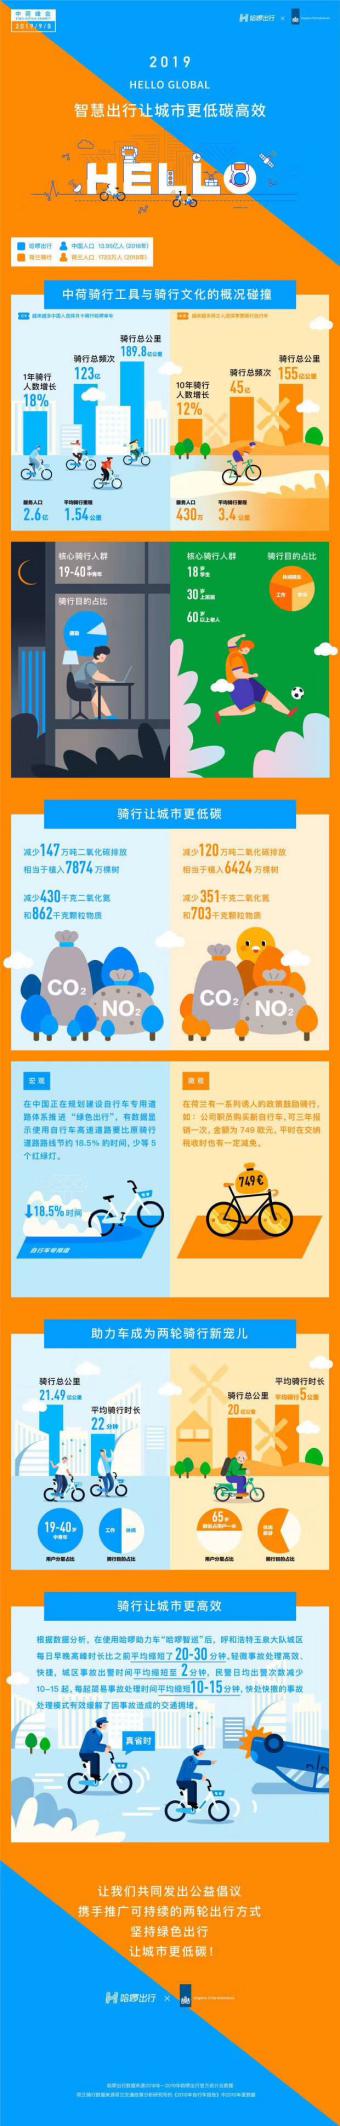 两轮回归城市 哈啰出行联合荷兰自行车大使馆倡议低碳出行